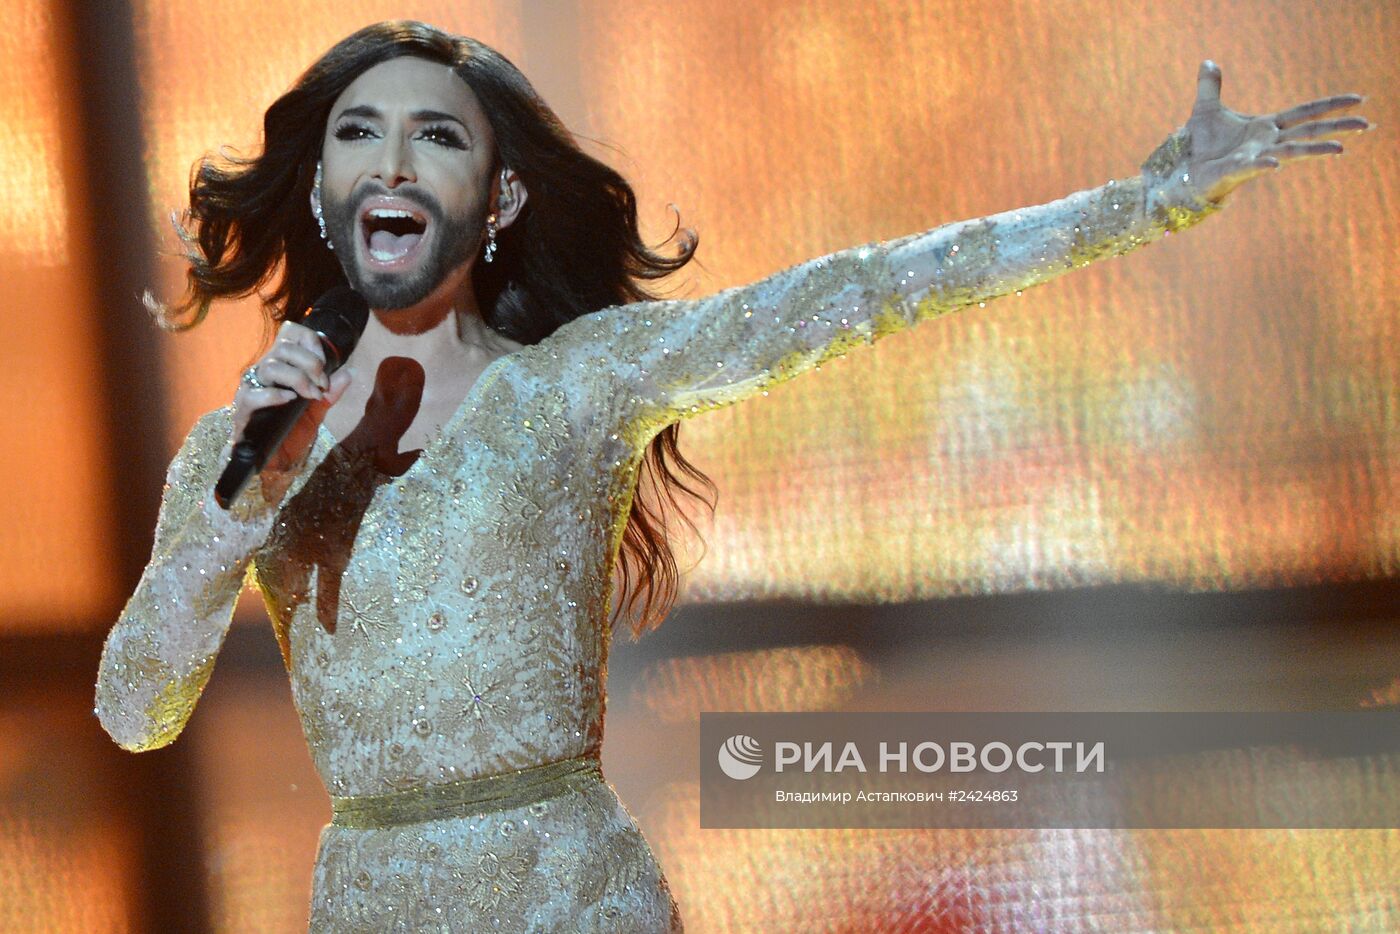 Второй полуфинал международного конкурса песни "Евровидение-2014"